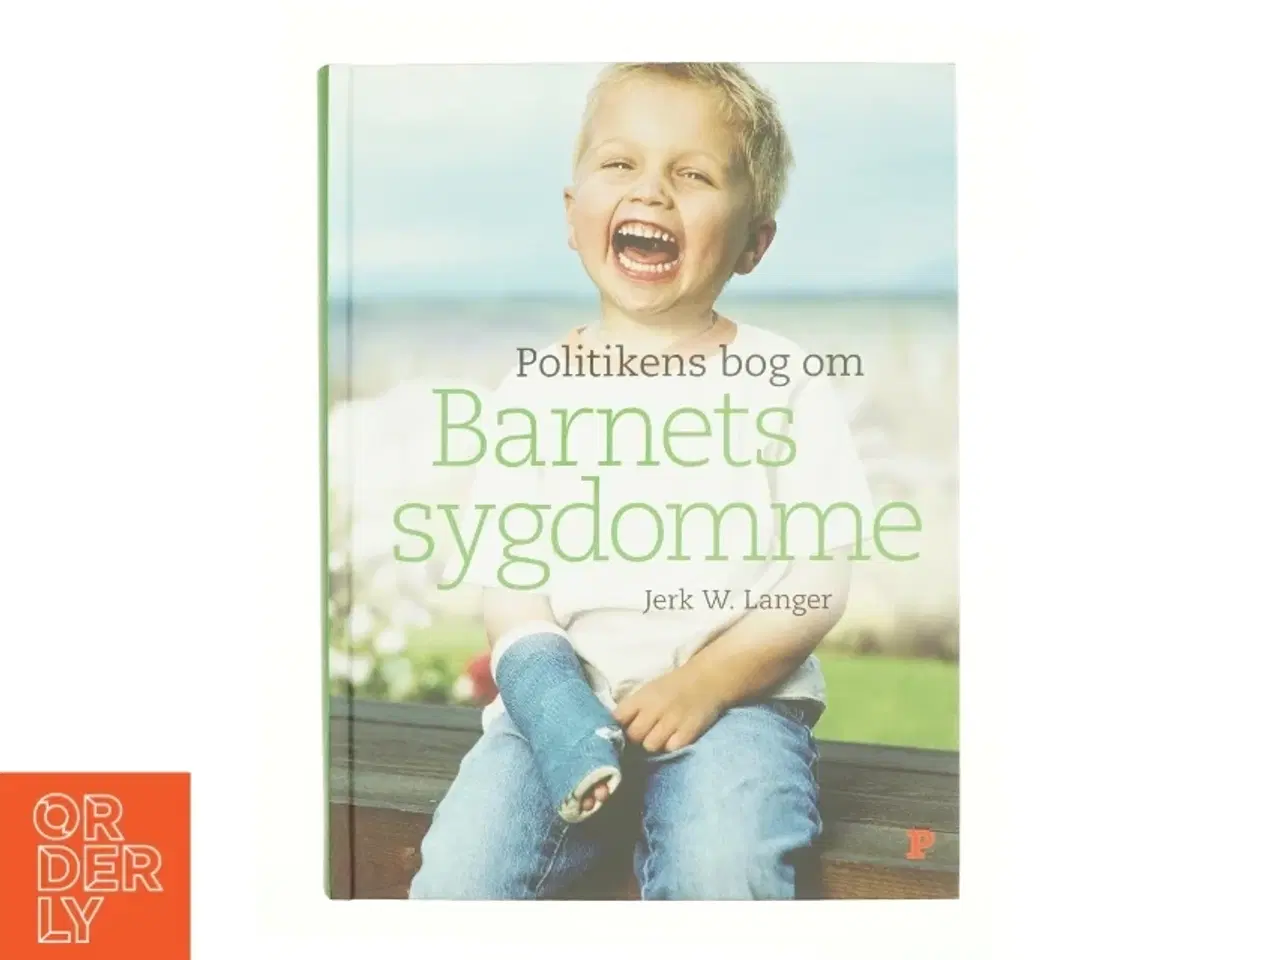 Billede 1 - Politikens bog om barnets sygdomme af Jerk W. Langer (Bog)